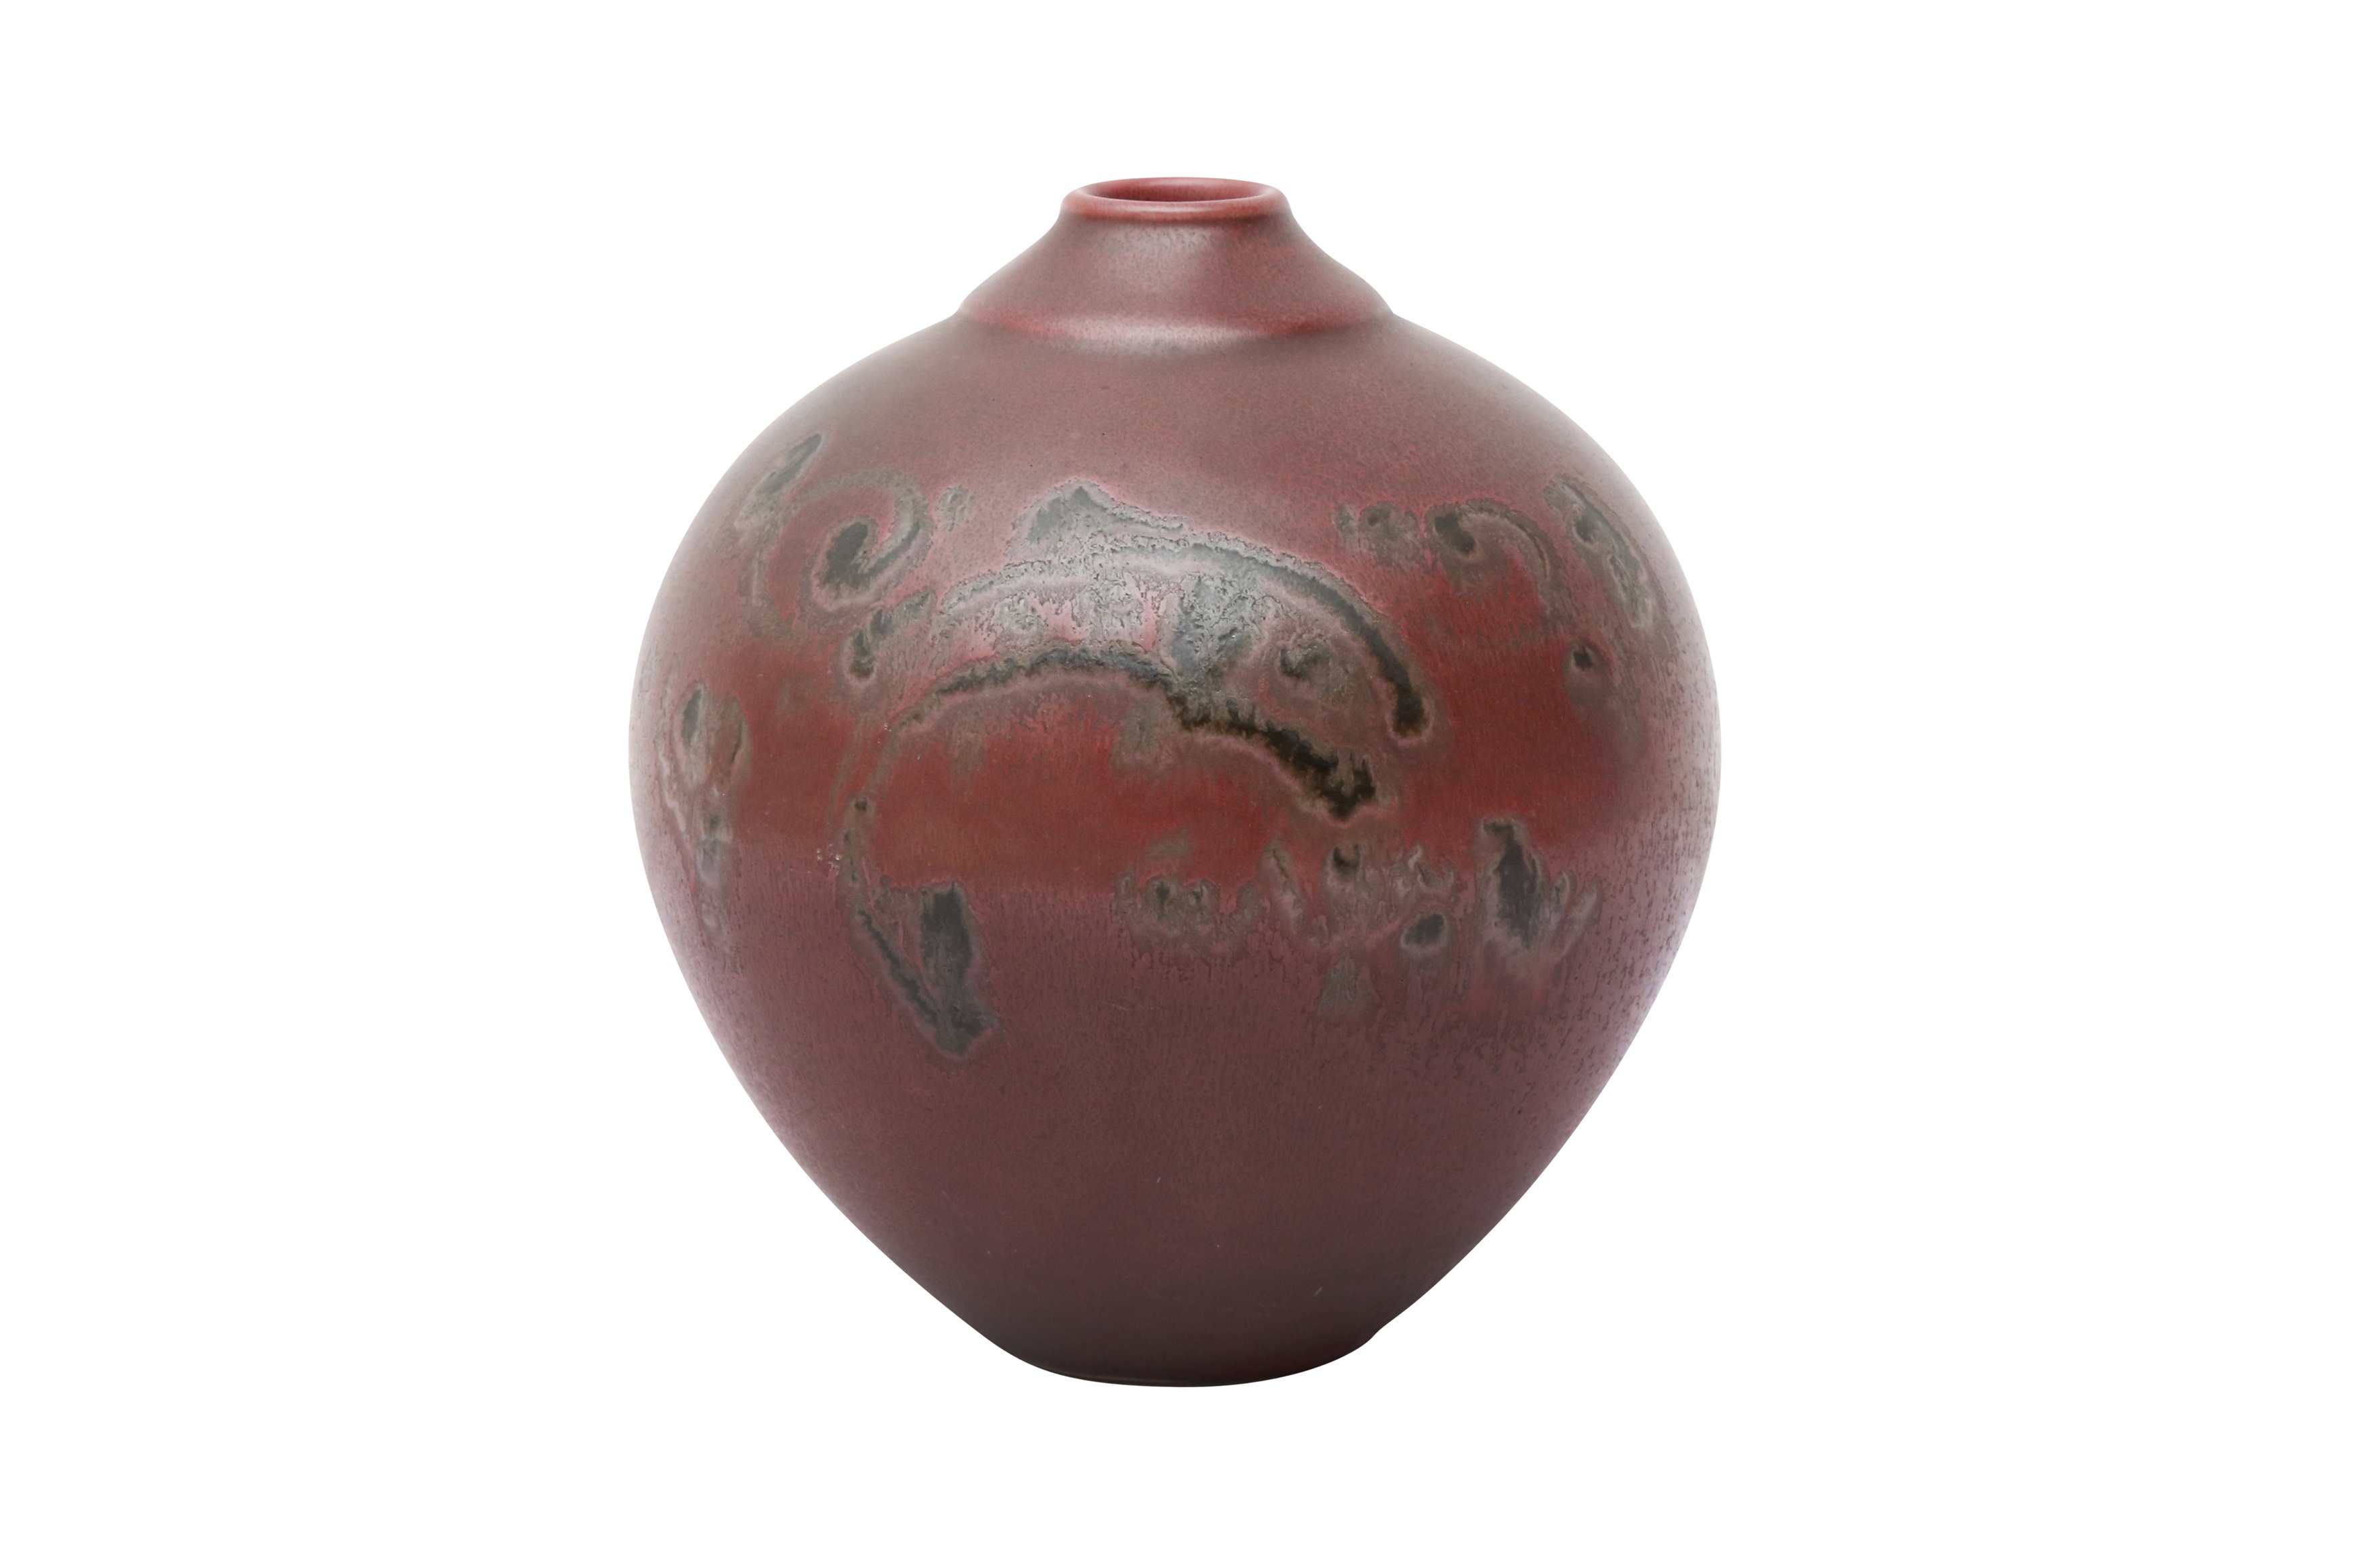 A CHINESE RED-GLAZED GLOBULAR JAR 二十世紀 紅釉罐《匋雅堂造》